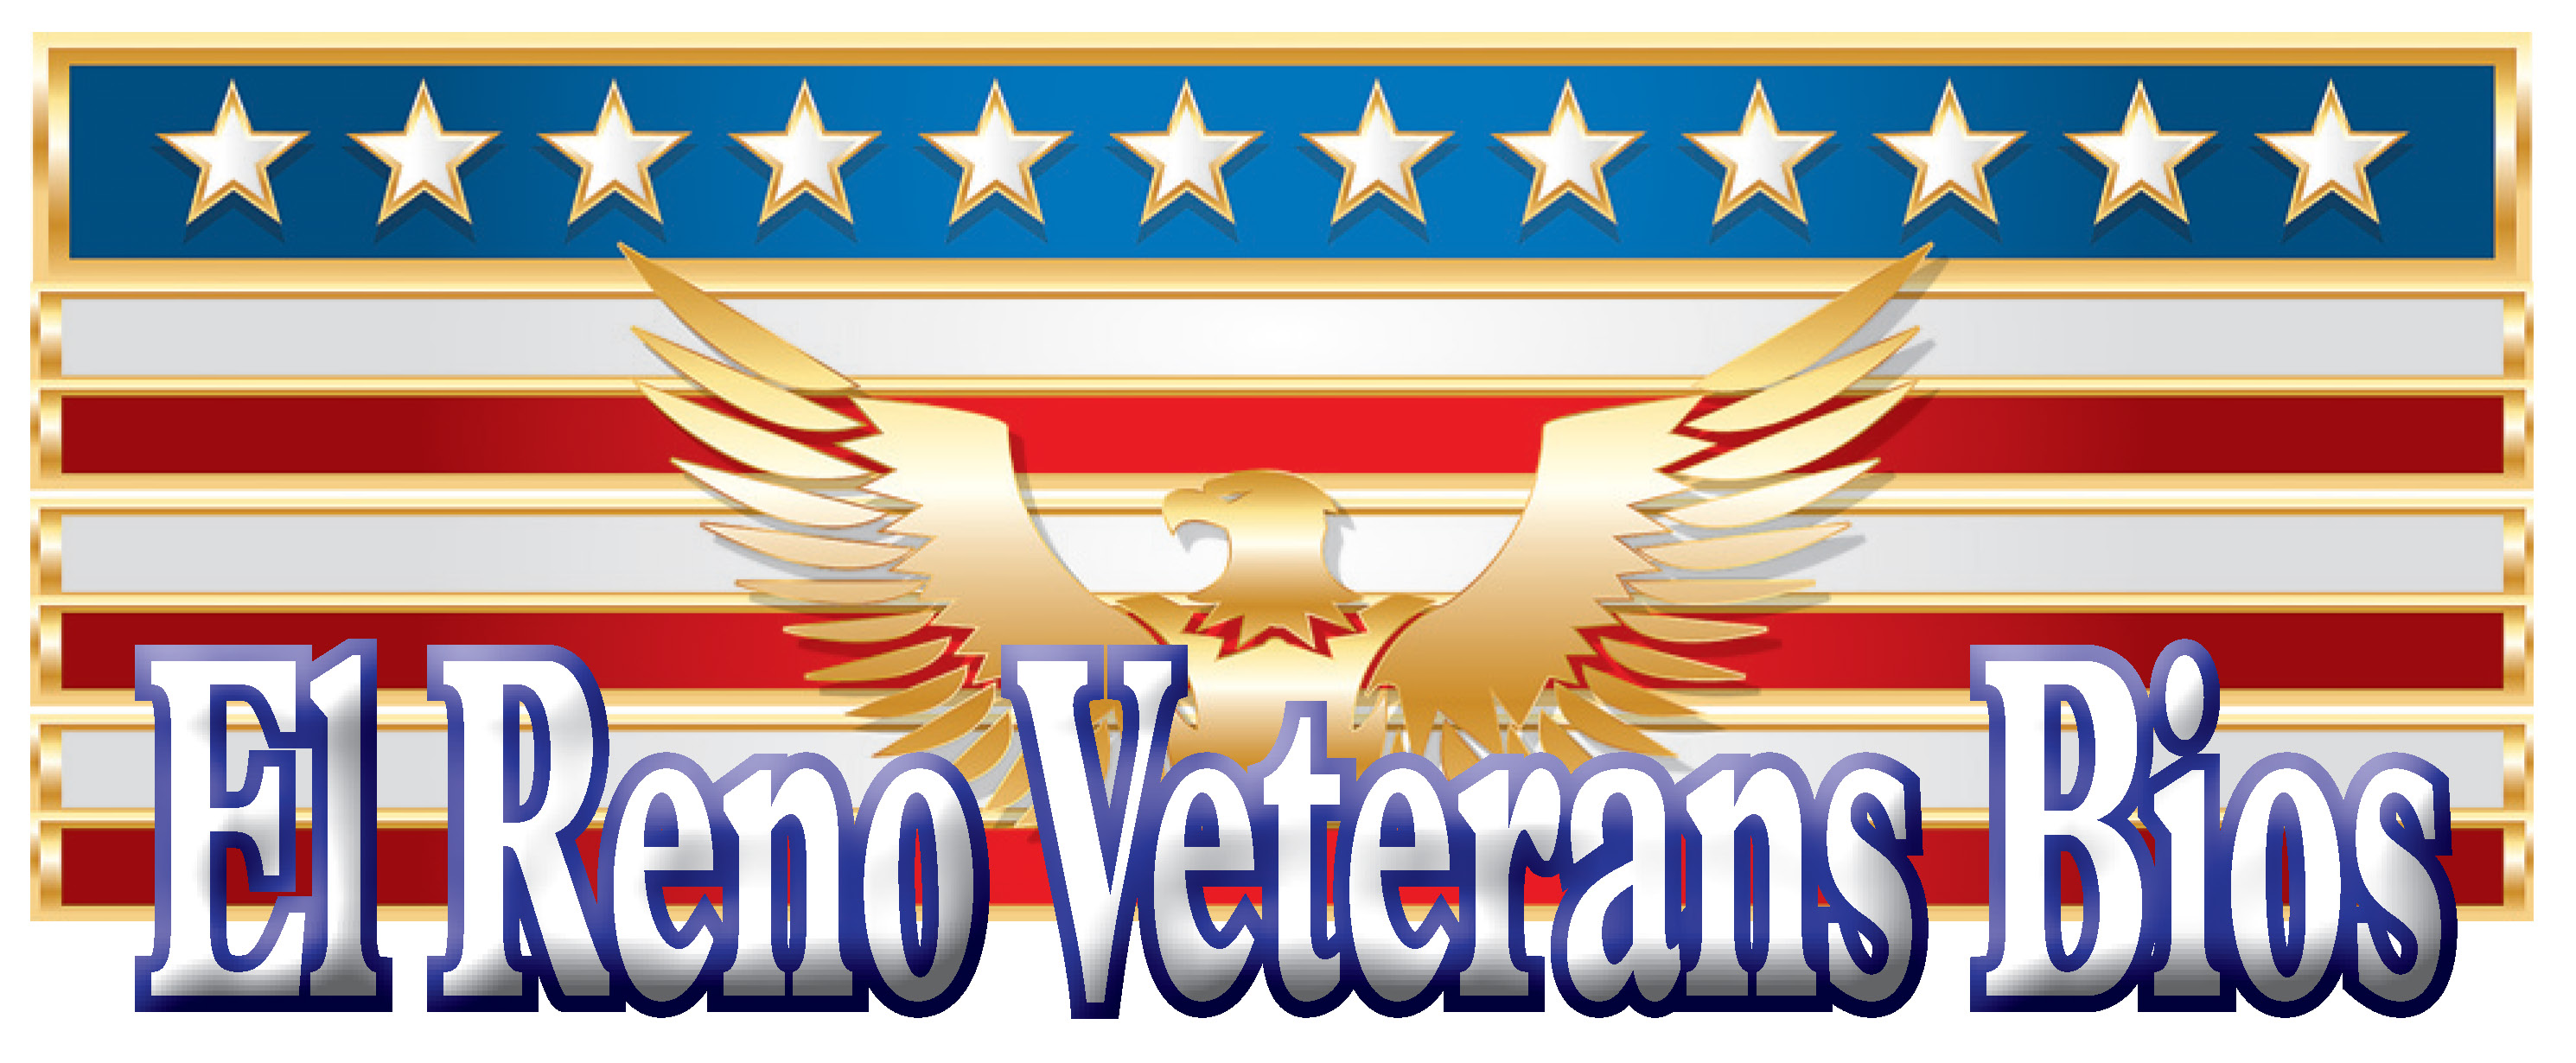 El Reno Veterans Bios graphic